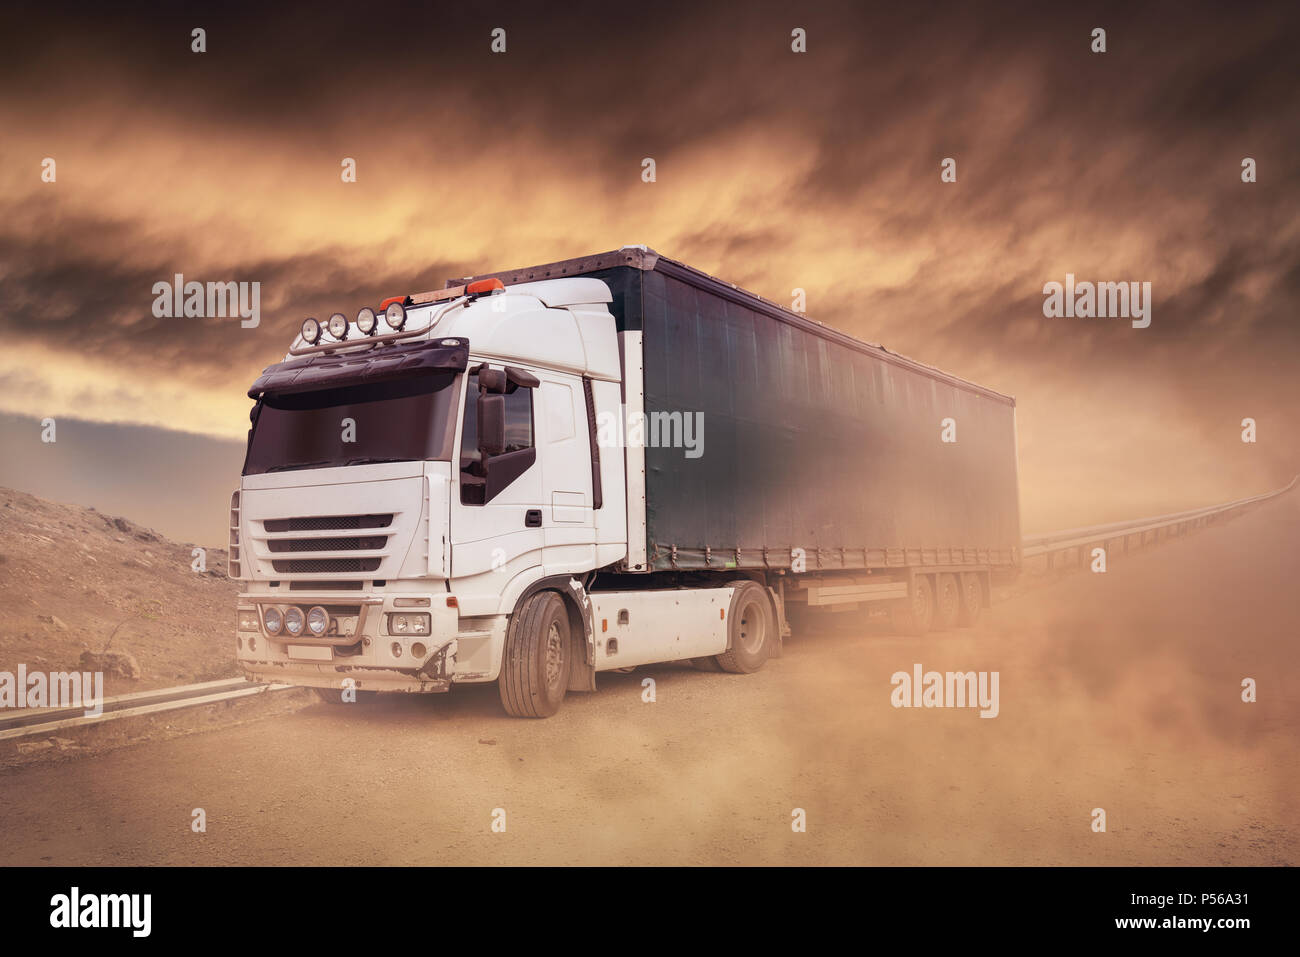 Camión de envío en la autopista-, camiones de transporte de mercancías. Foto de stock